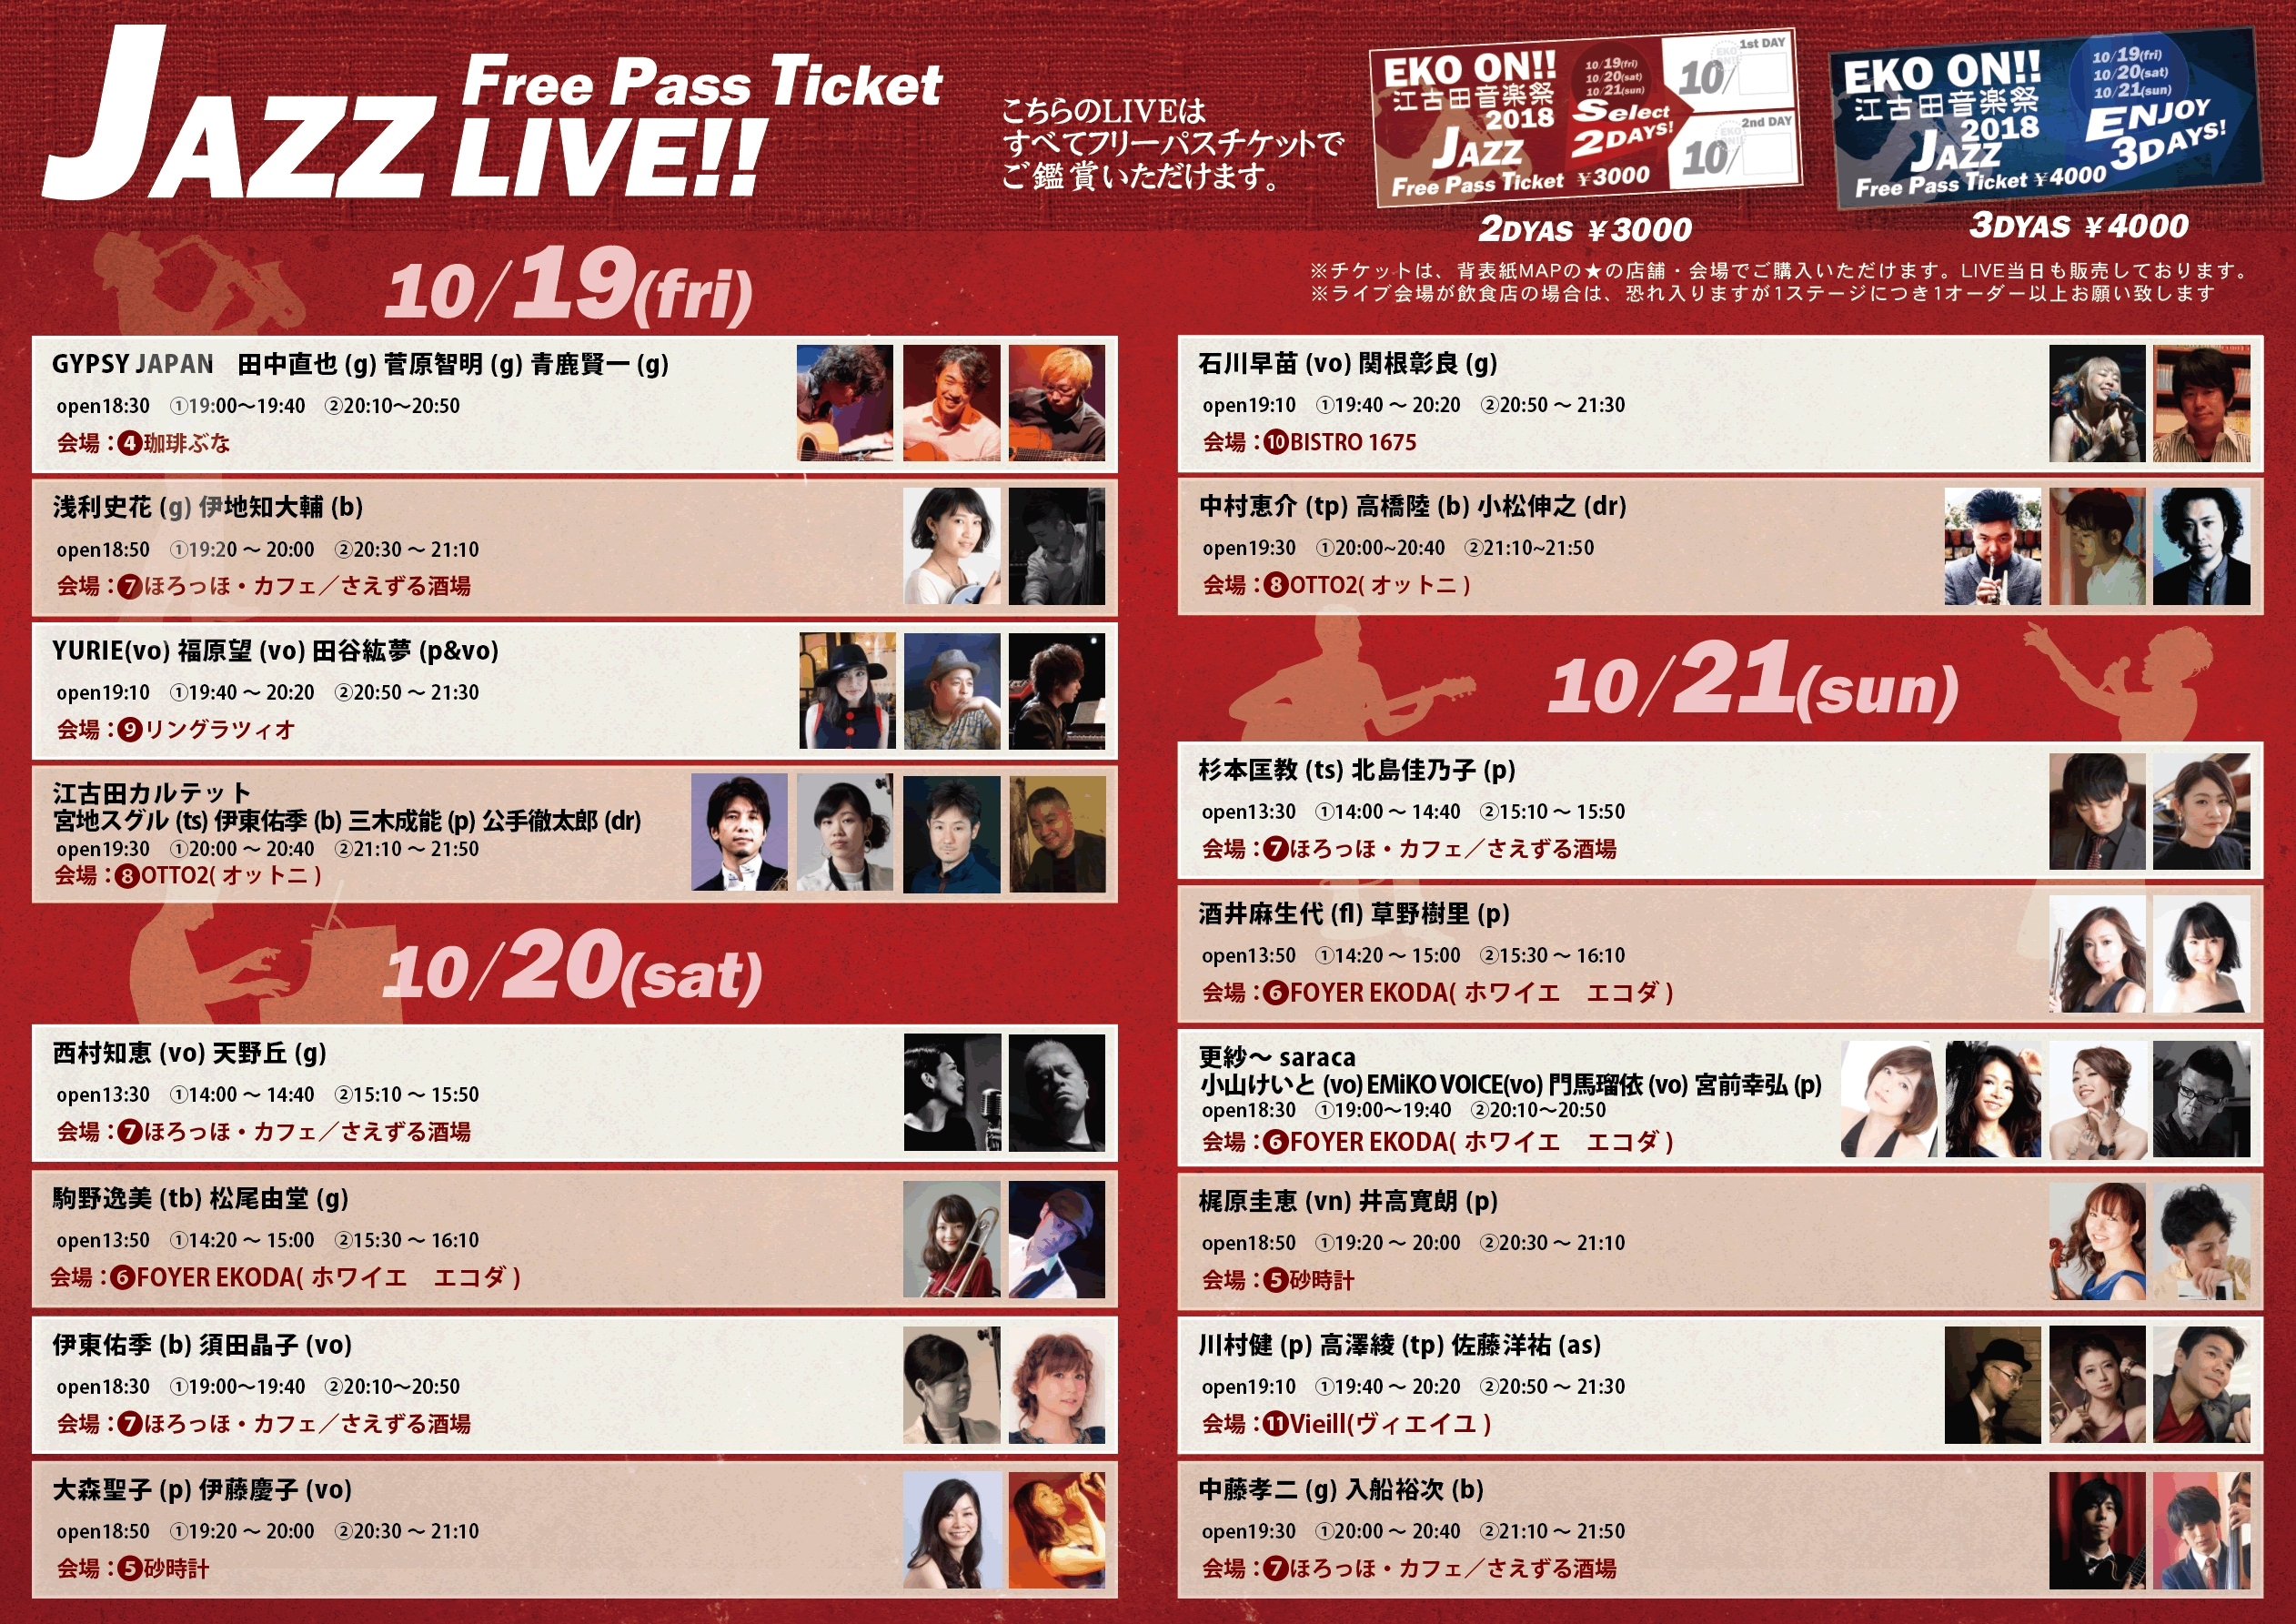 EKO ON江古田音楽祭2018のジャズ公演パンフレット